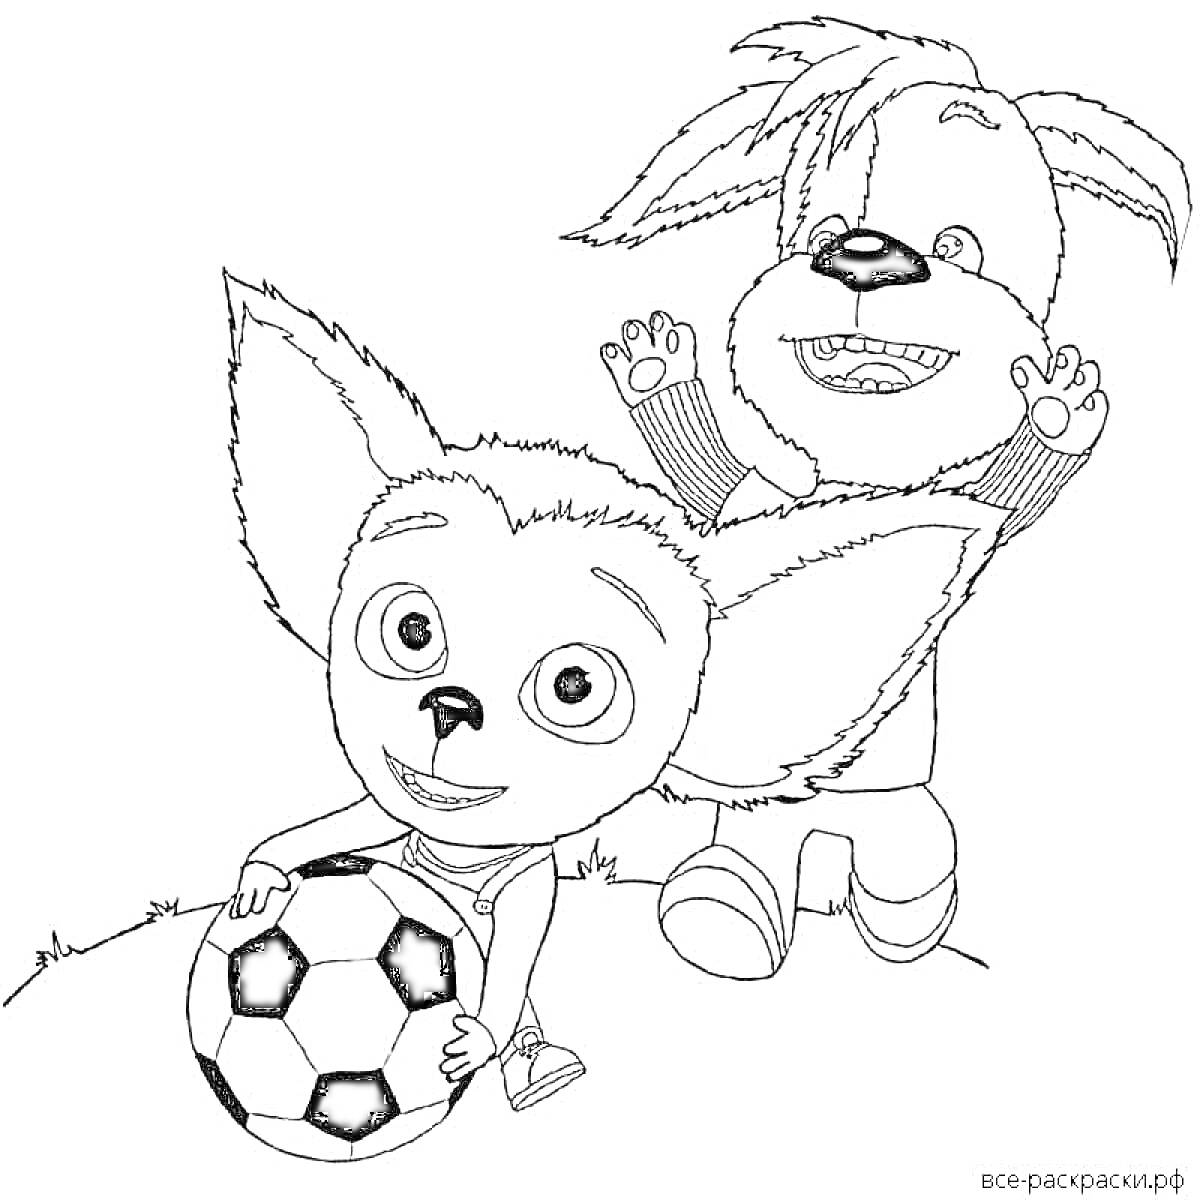 Раскраска Два персонажа Барбоскиных играют с футбольным мячом на траве